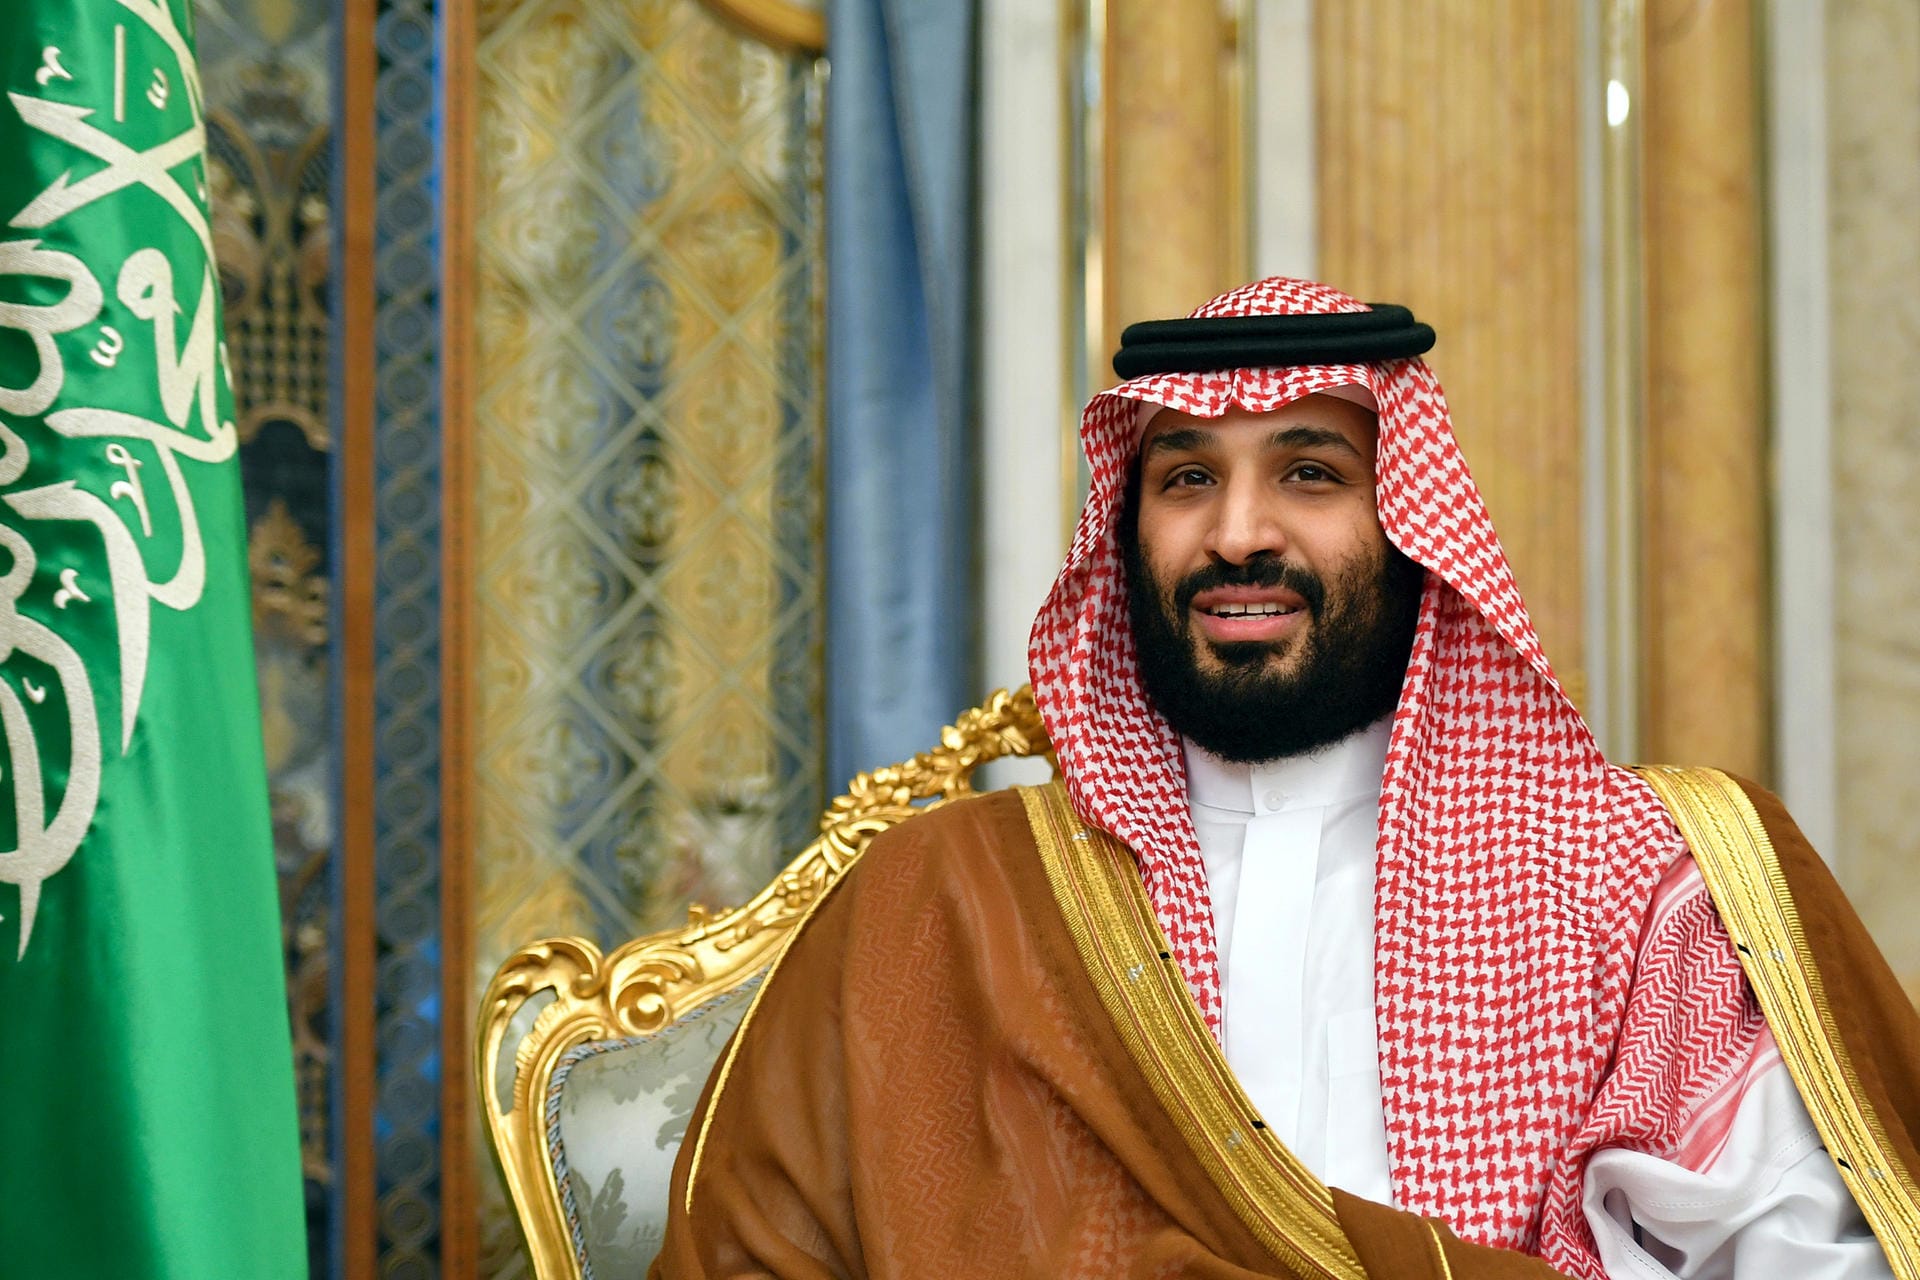 Der saudische Kronprinz Mohammed bin Salman wird von der internationalen Gemeinschaft verdächtigt, hinter dem Mord zu stecken.